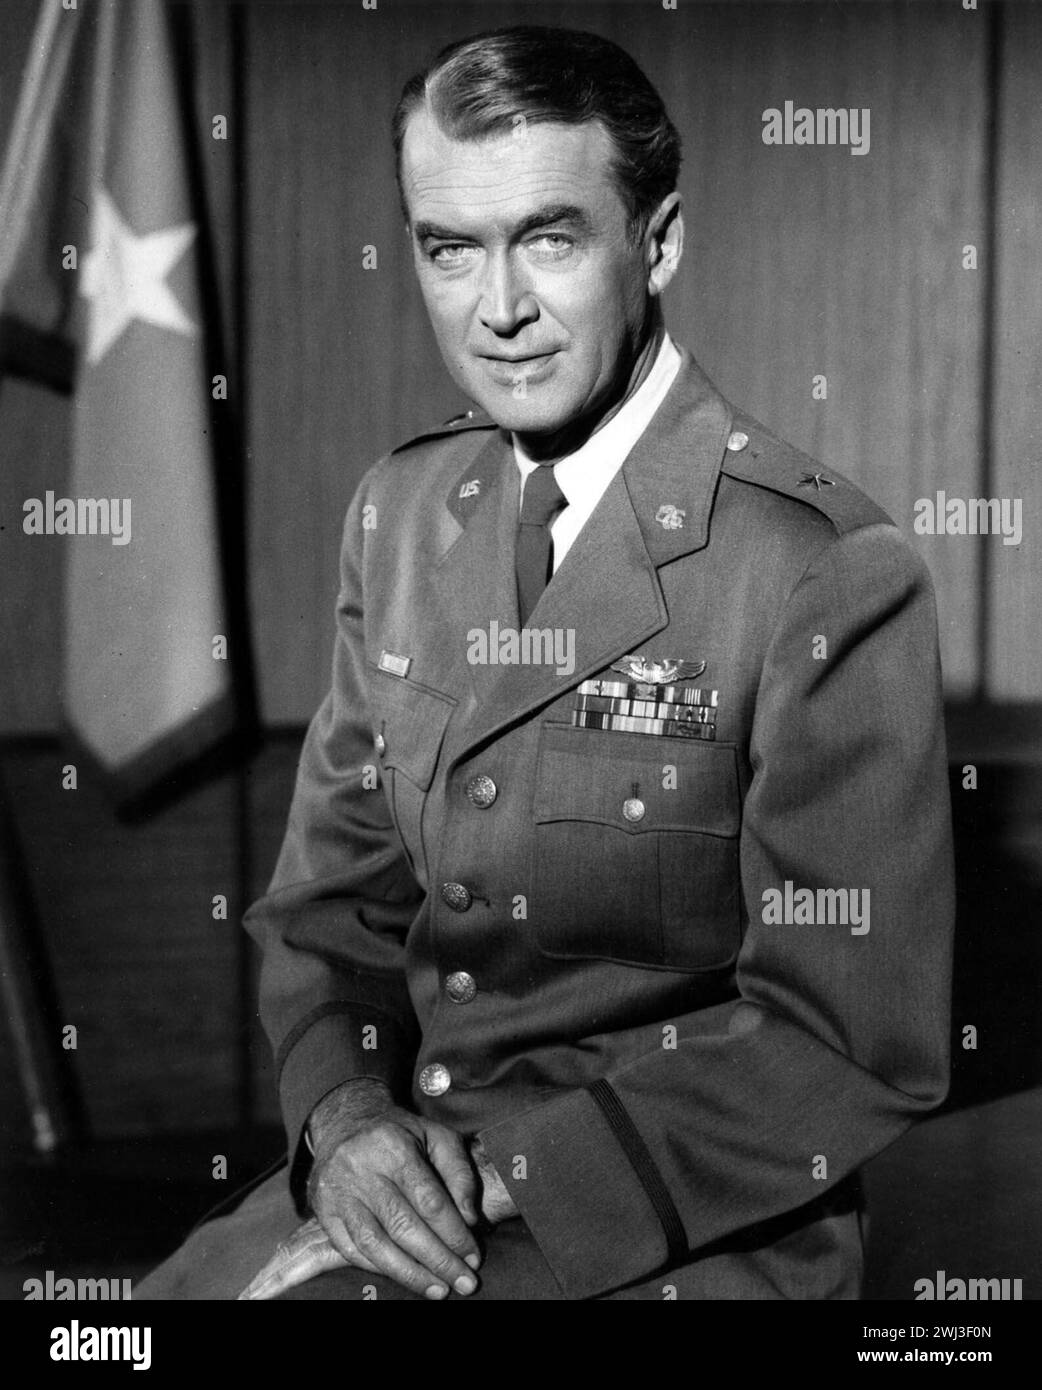 Brig. General James M. Stewart, USAF Reserve - Schauspieler James Stewart in Uniform. Stockfoto